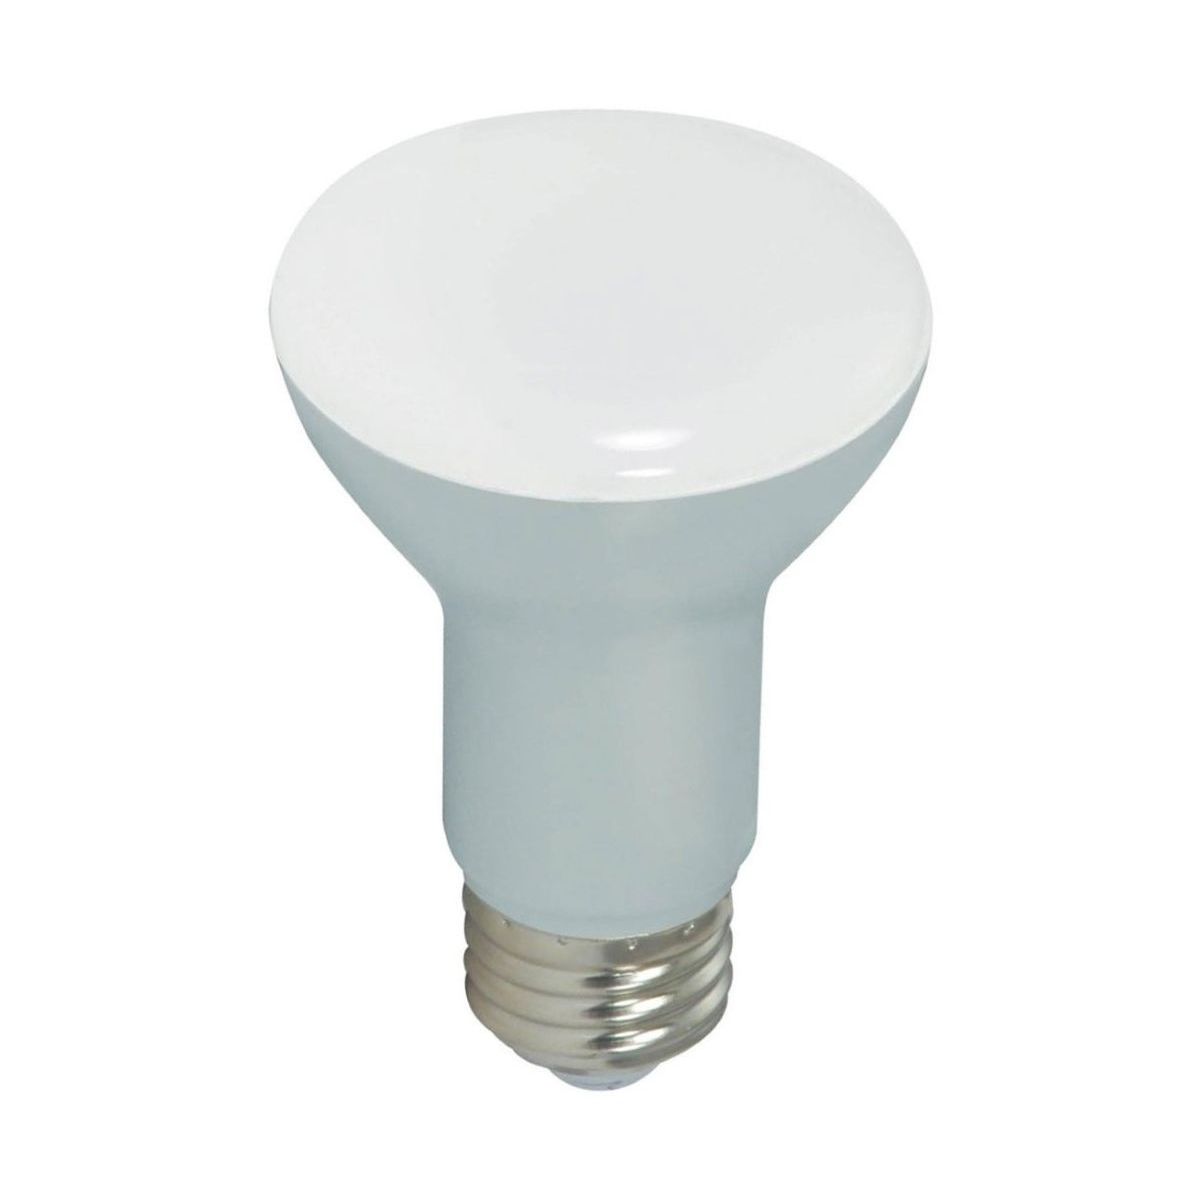 LED R20/BR20 Reflector bulb, 6 watt, 525 Lumens, 5000K, E26 Medium Base, 107 Deg. Flood, Dimmable - Bees Lighting